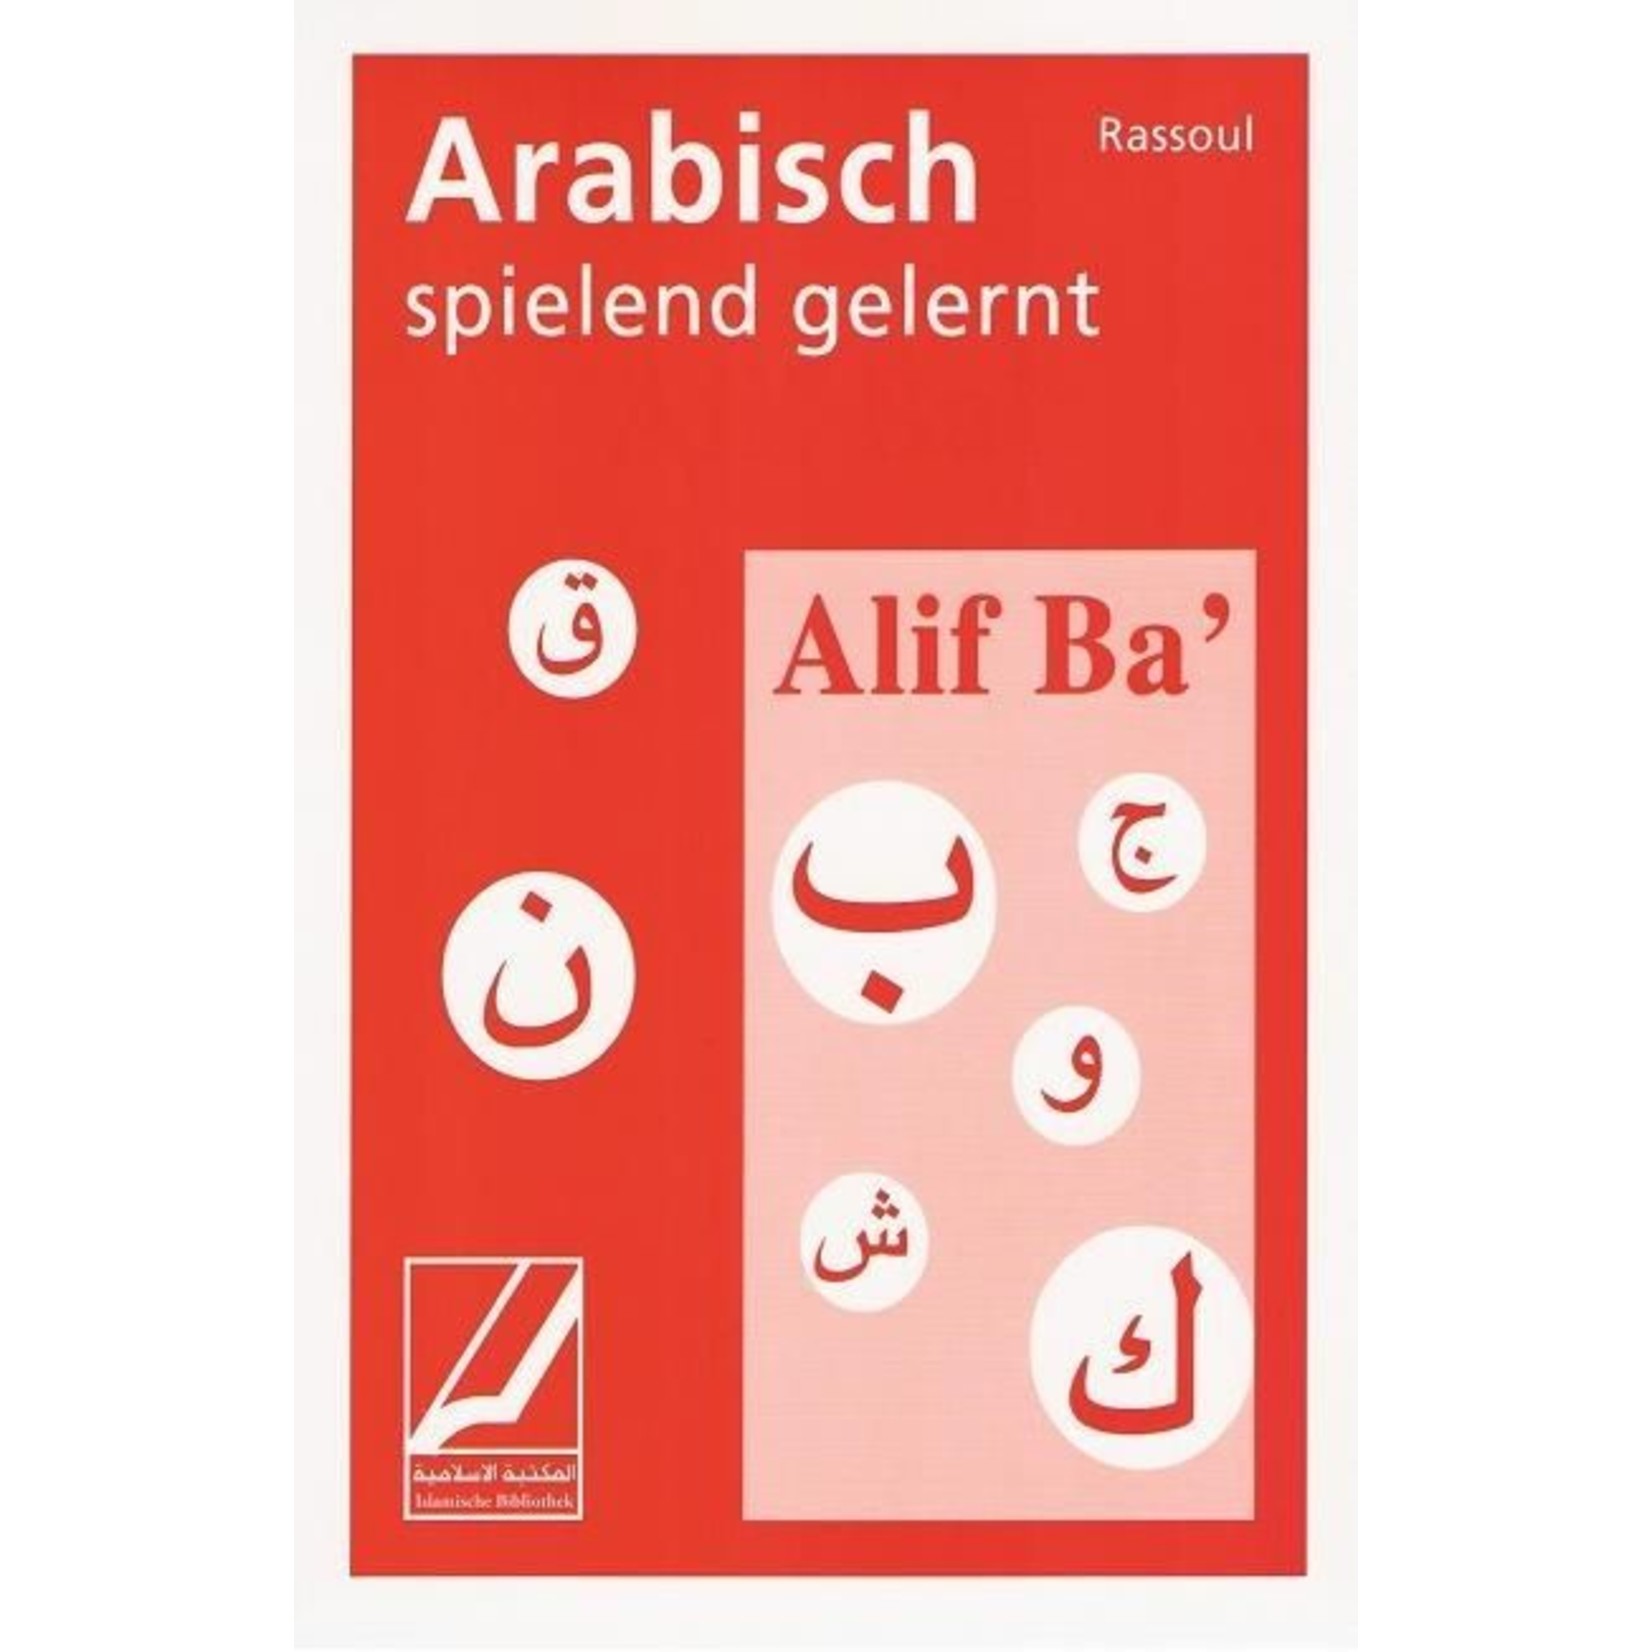 Alif Ba - Arabisch spielend gelernt